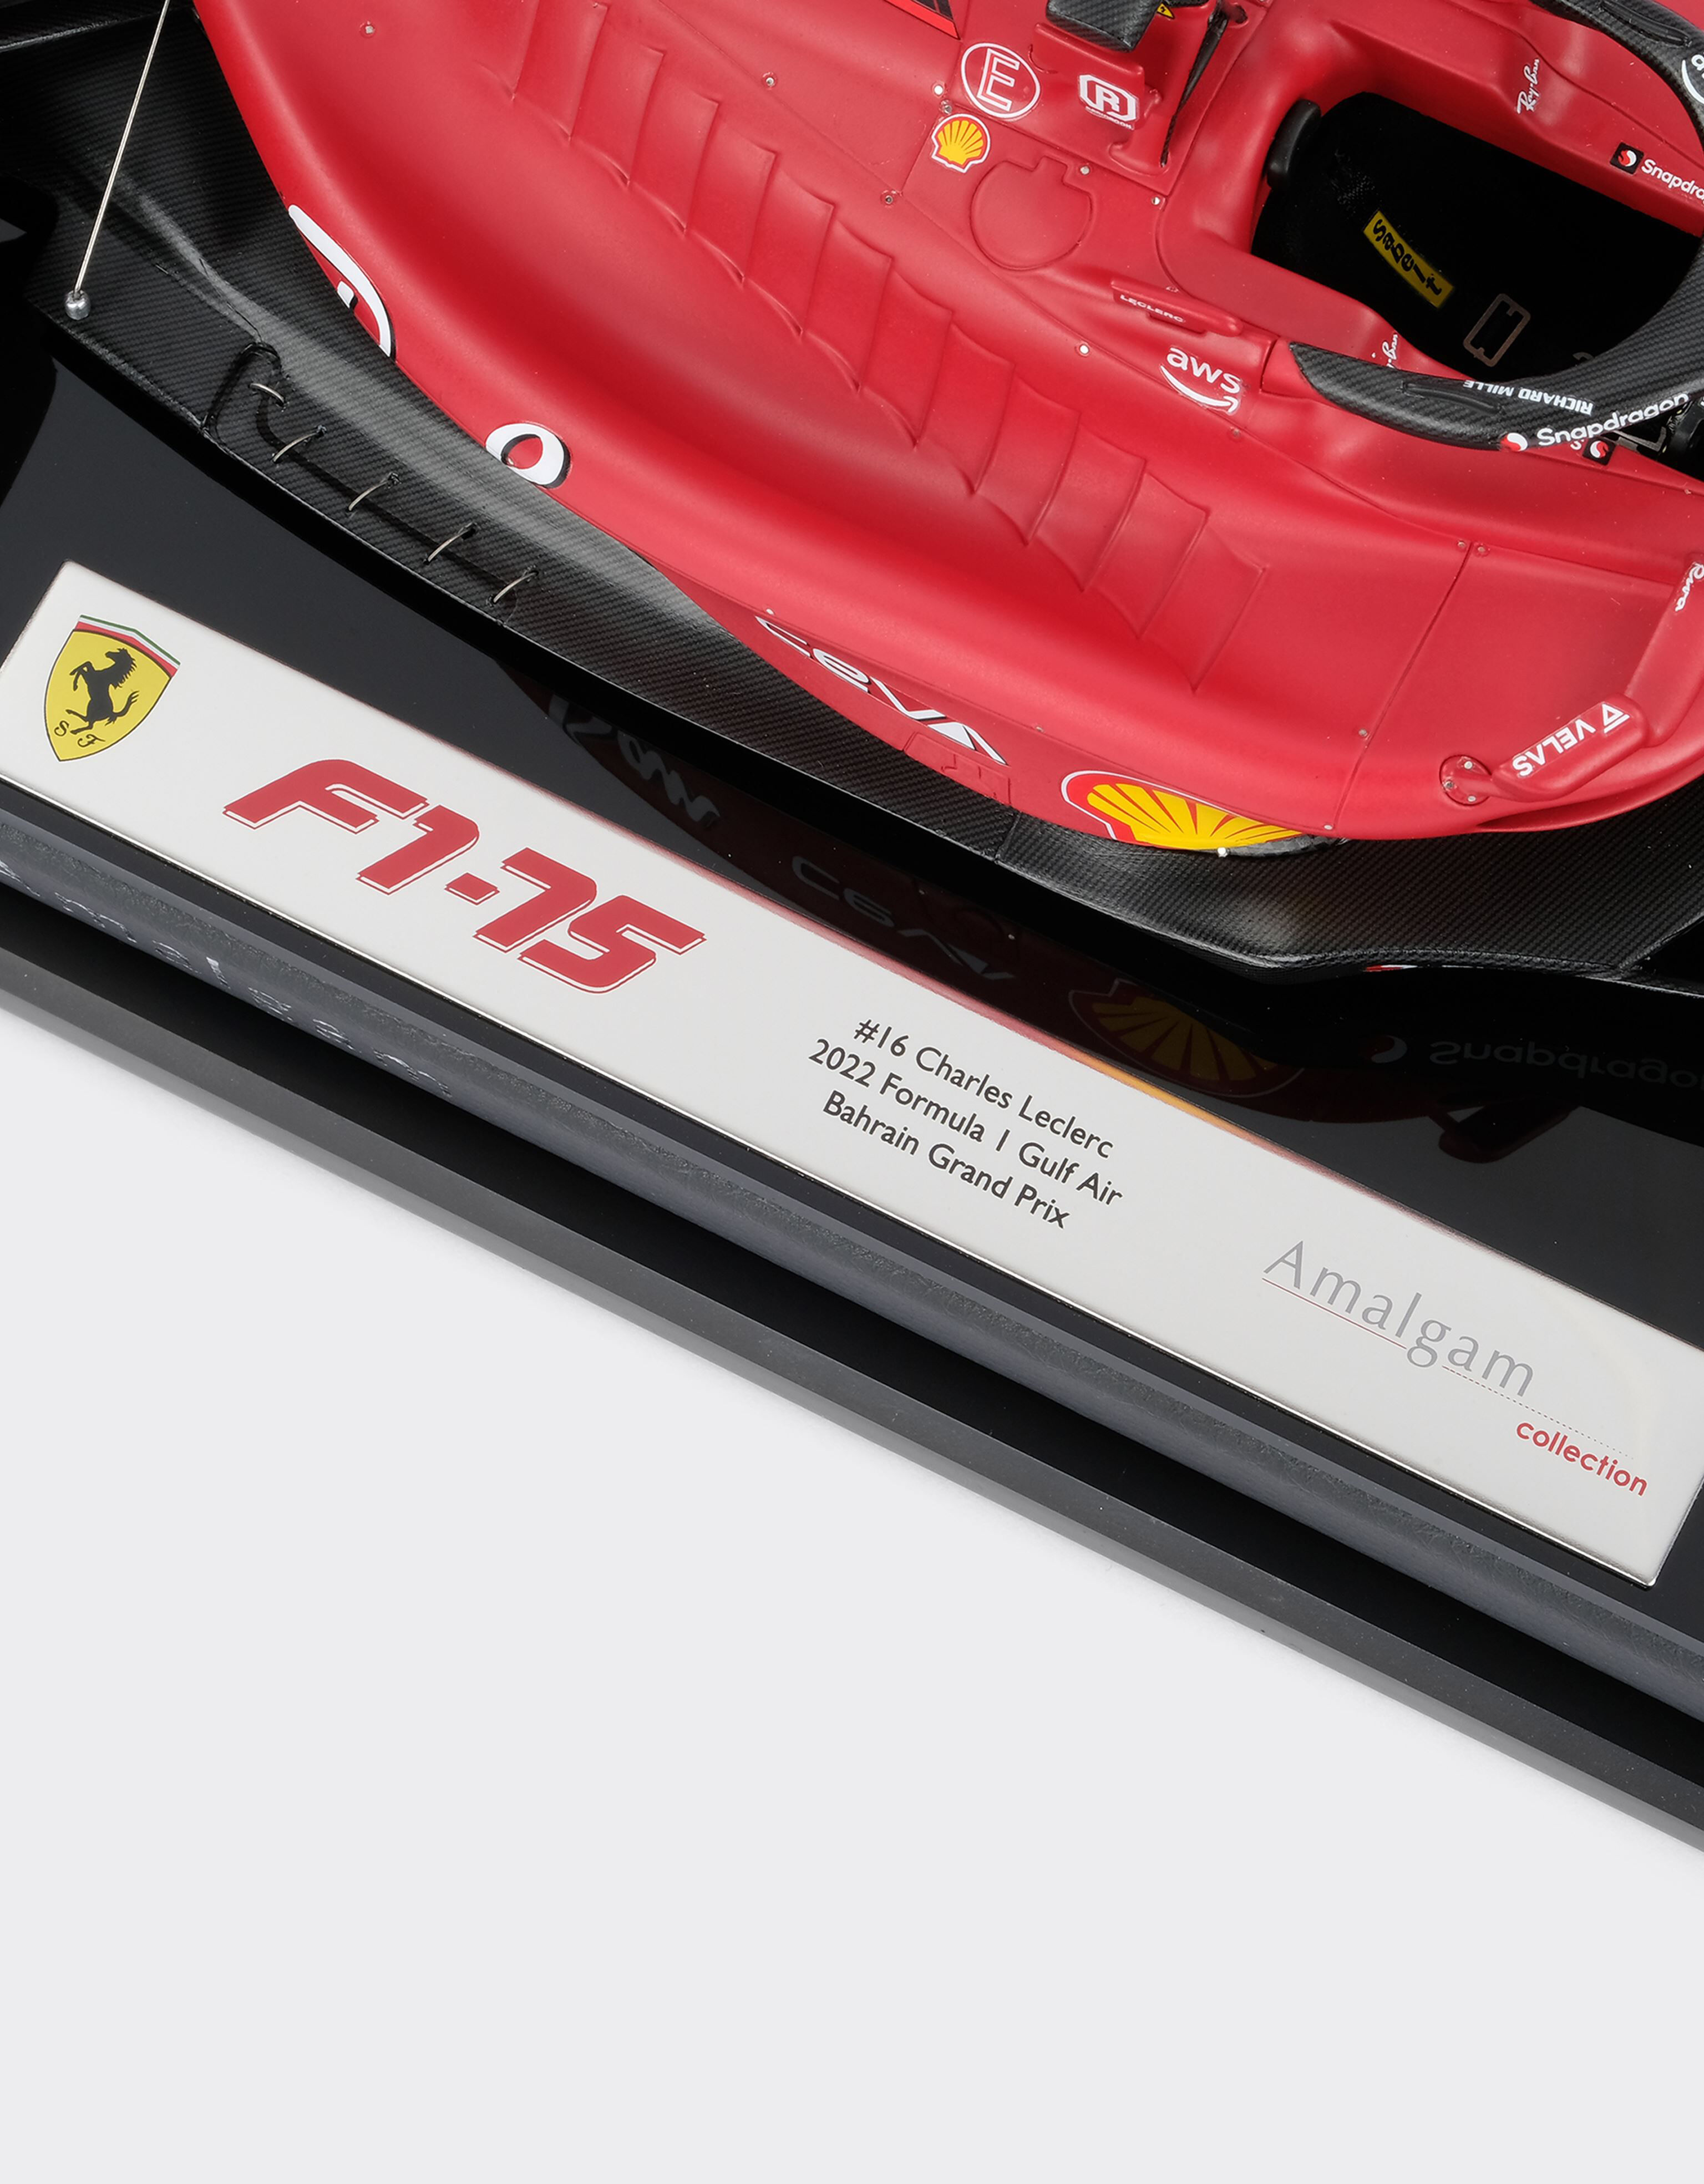 Ferrari Ferrari F1-75 Charles Leclerc model in 1:18 scale Rosso Corsa F0884f